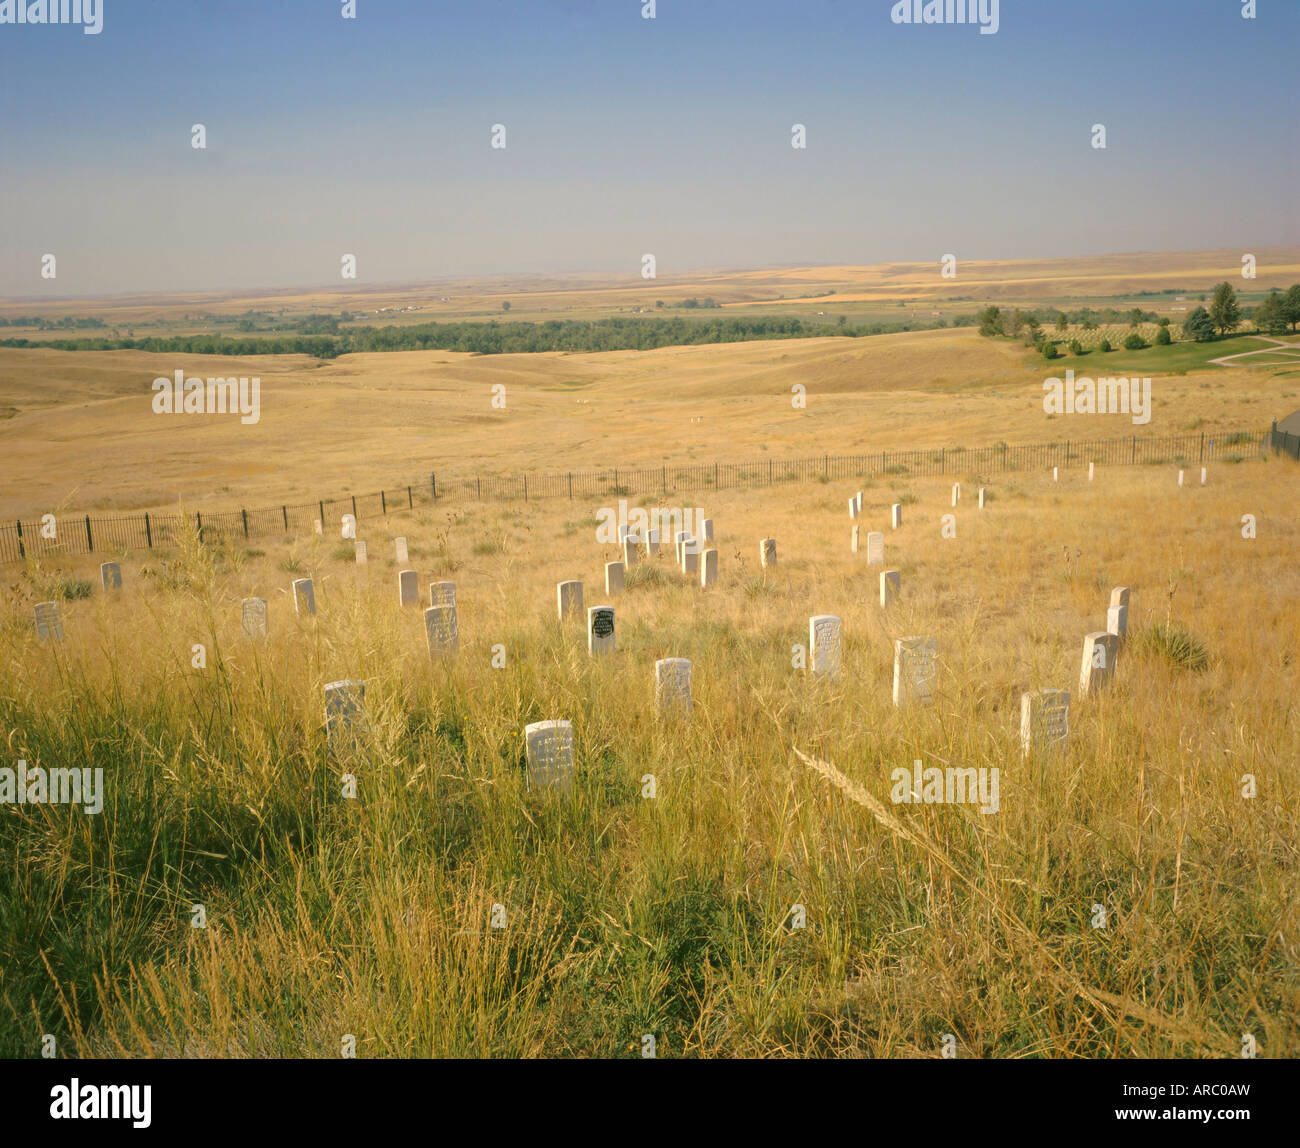 Custer's Last Stand Schlachtfeld Custers ernsten Aufstellungsort gekennzeichnet durch dunkle Schild auf Stein, Montana, USA, Nordamerika Stockfoto